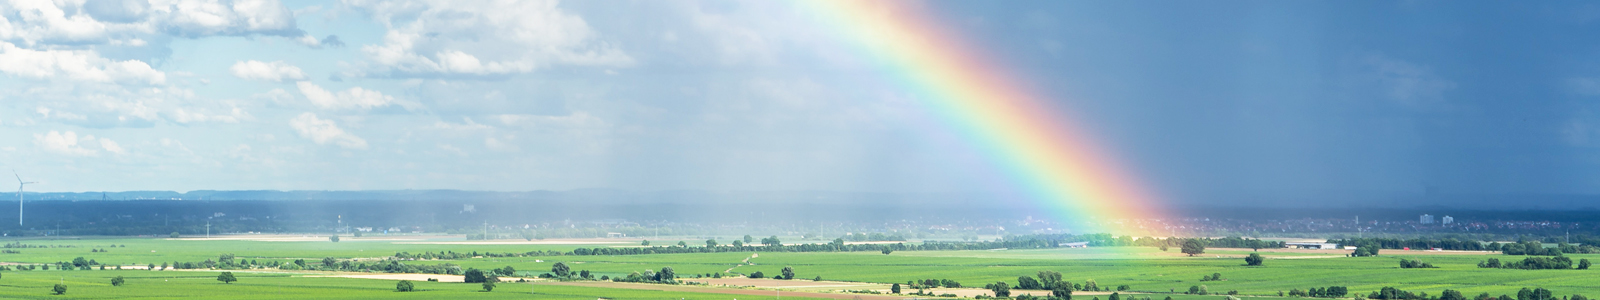 Landschaft mit Regenbogen am Himmel ©K. Ruschmaritsch